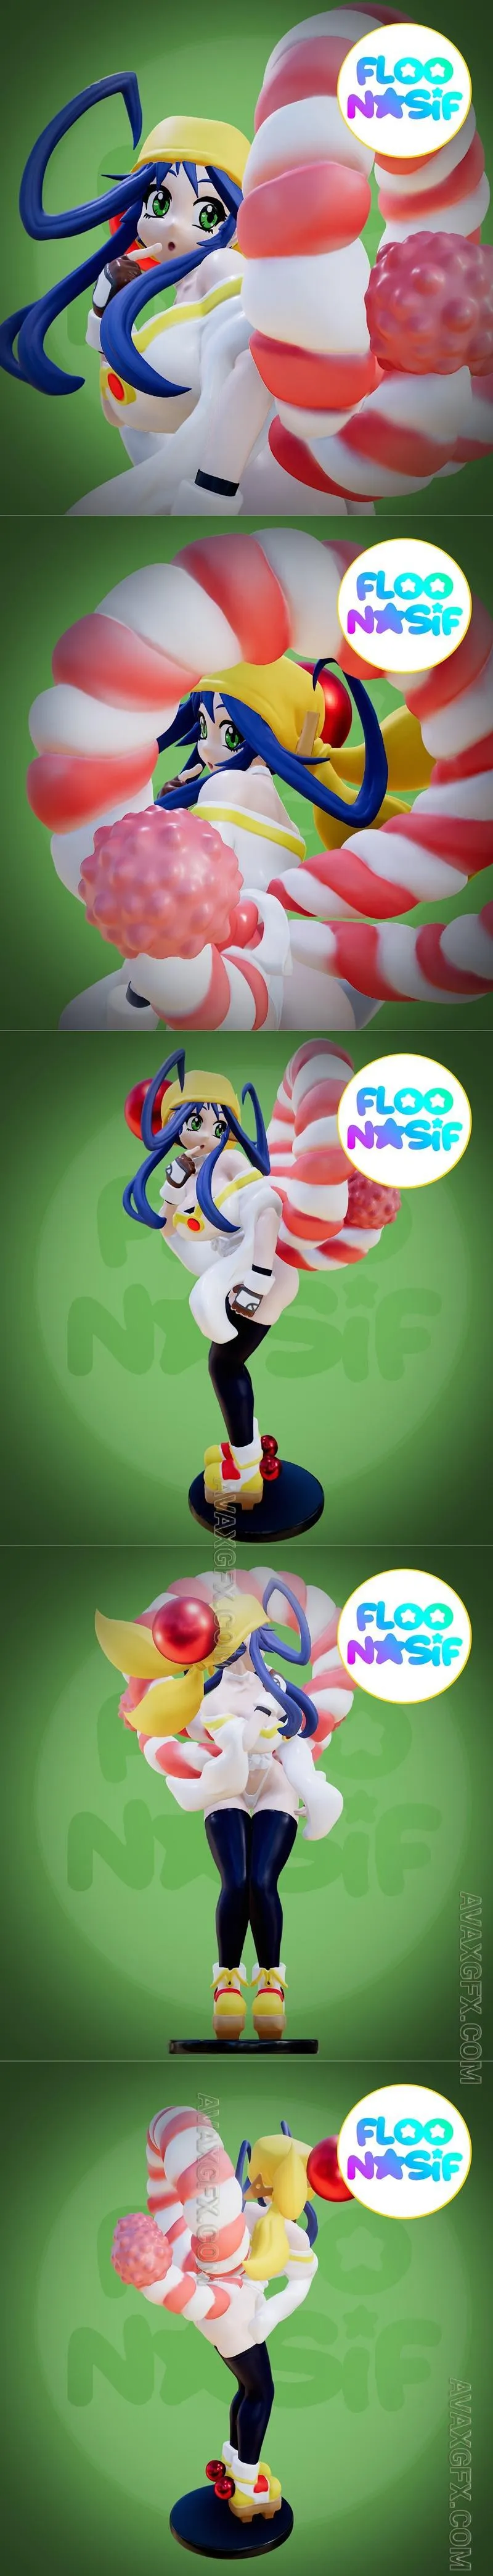 Lima Saber Marionette - Floonasif - STL 3D Model